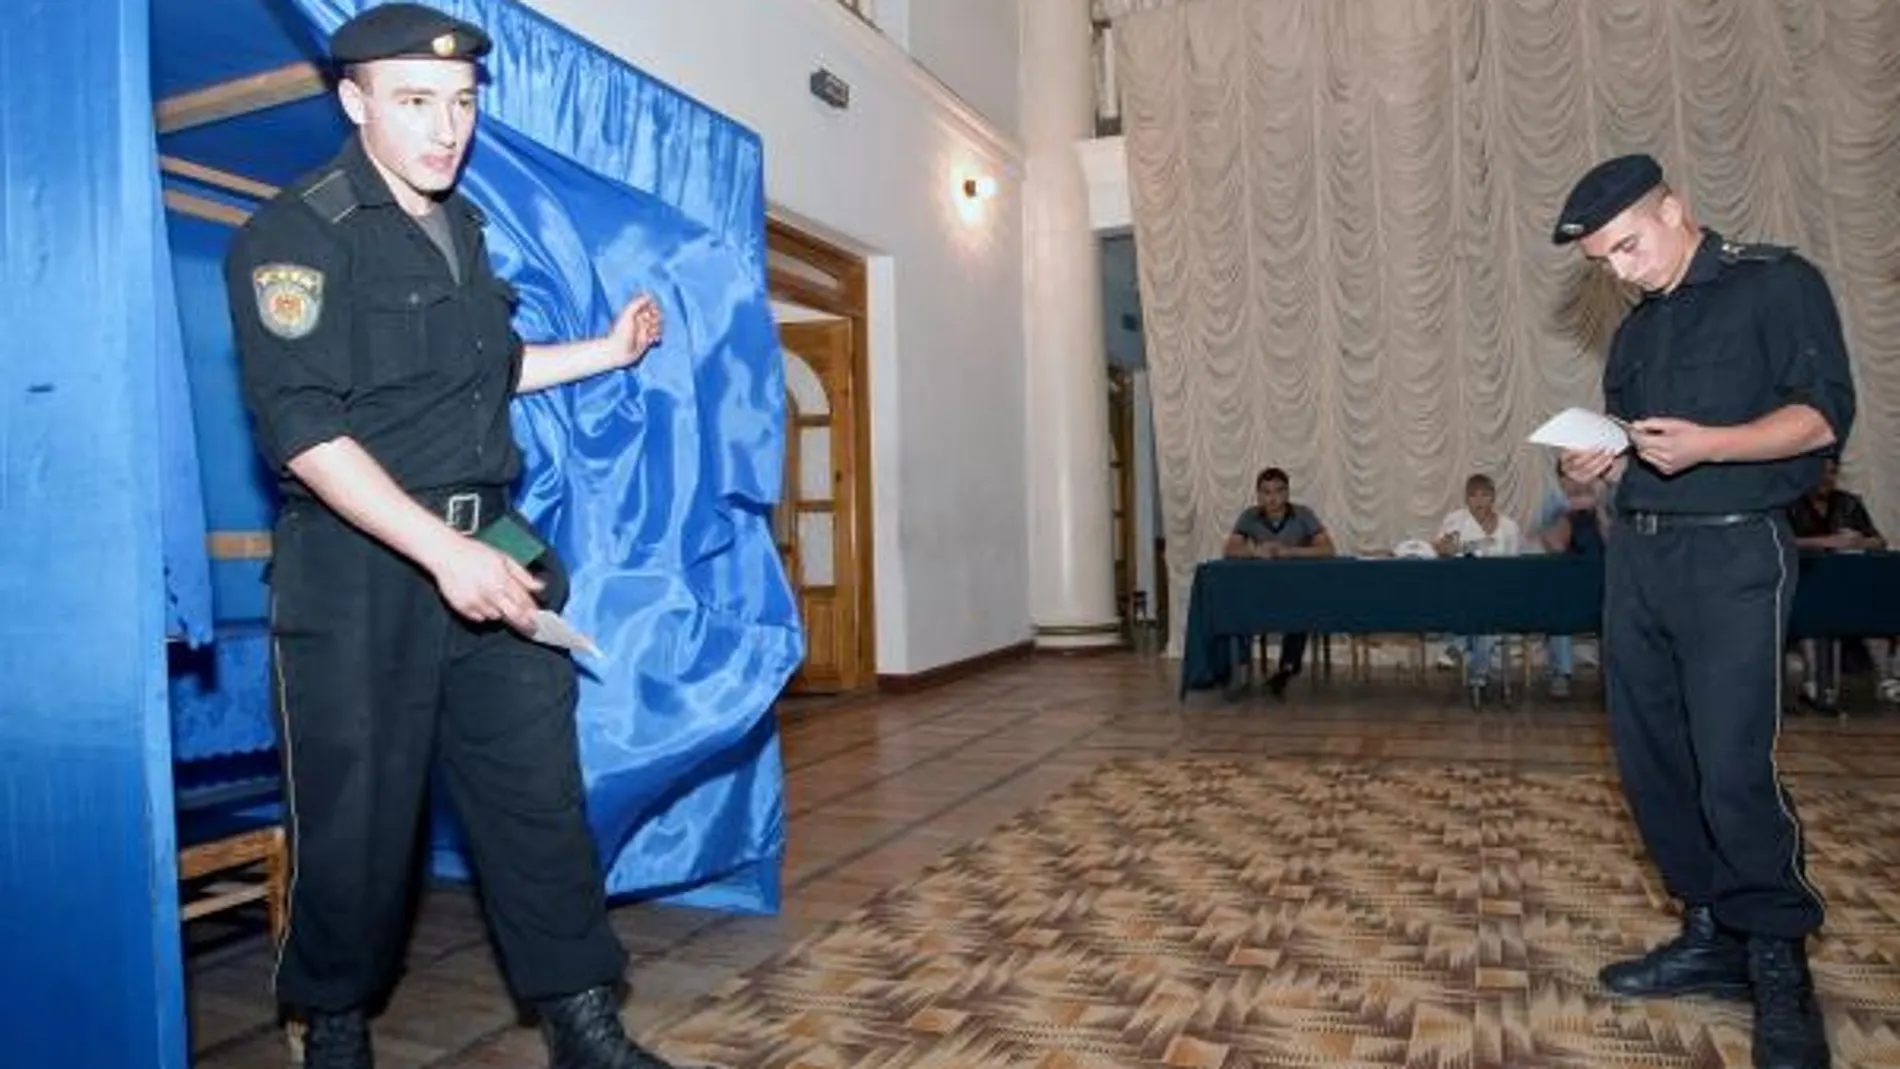 Un par de soldados moldavos ejercen su derecho al voto en un colegio electoral en Chisinau (Moldavia) hoy miércoles 29 de julio durante la celebración de las elecciones parlamentarias en el país.